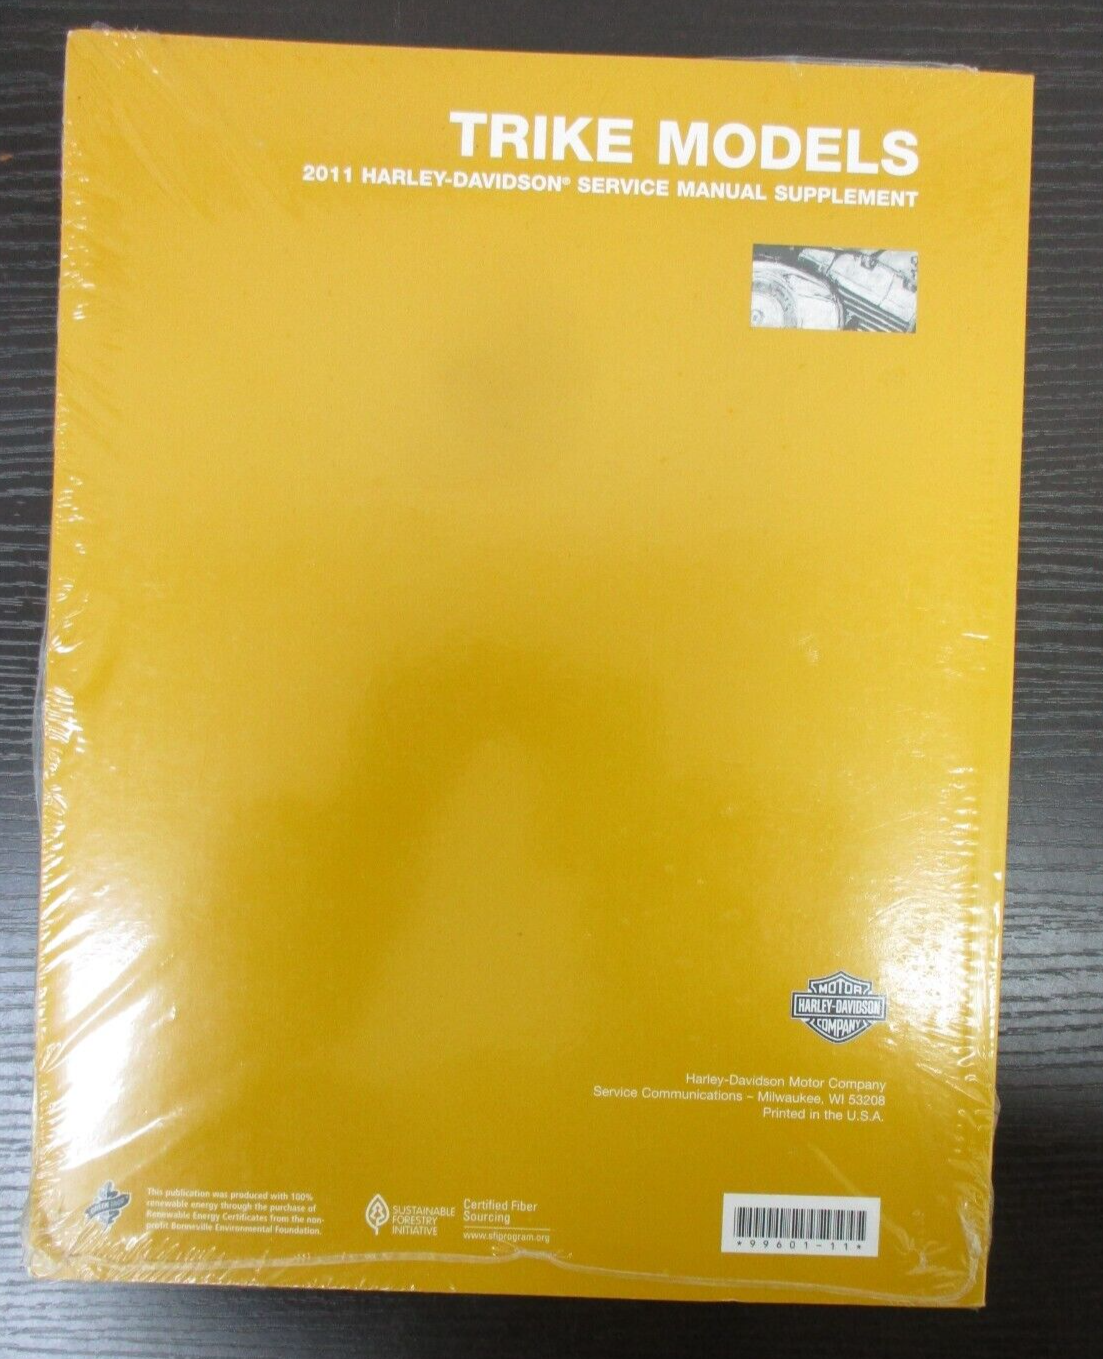 Harley-Davidson Trike Models 2011 Service Manual Supplement 99601-11